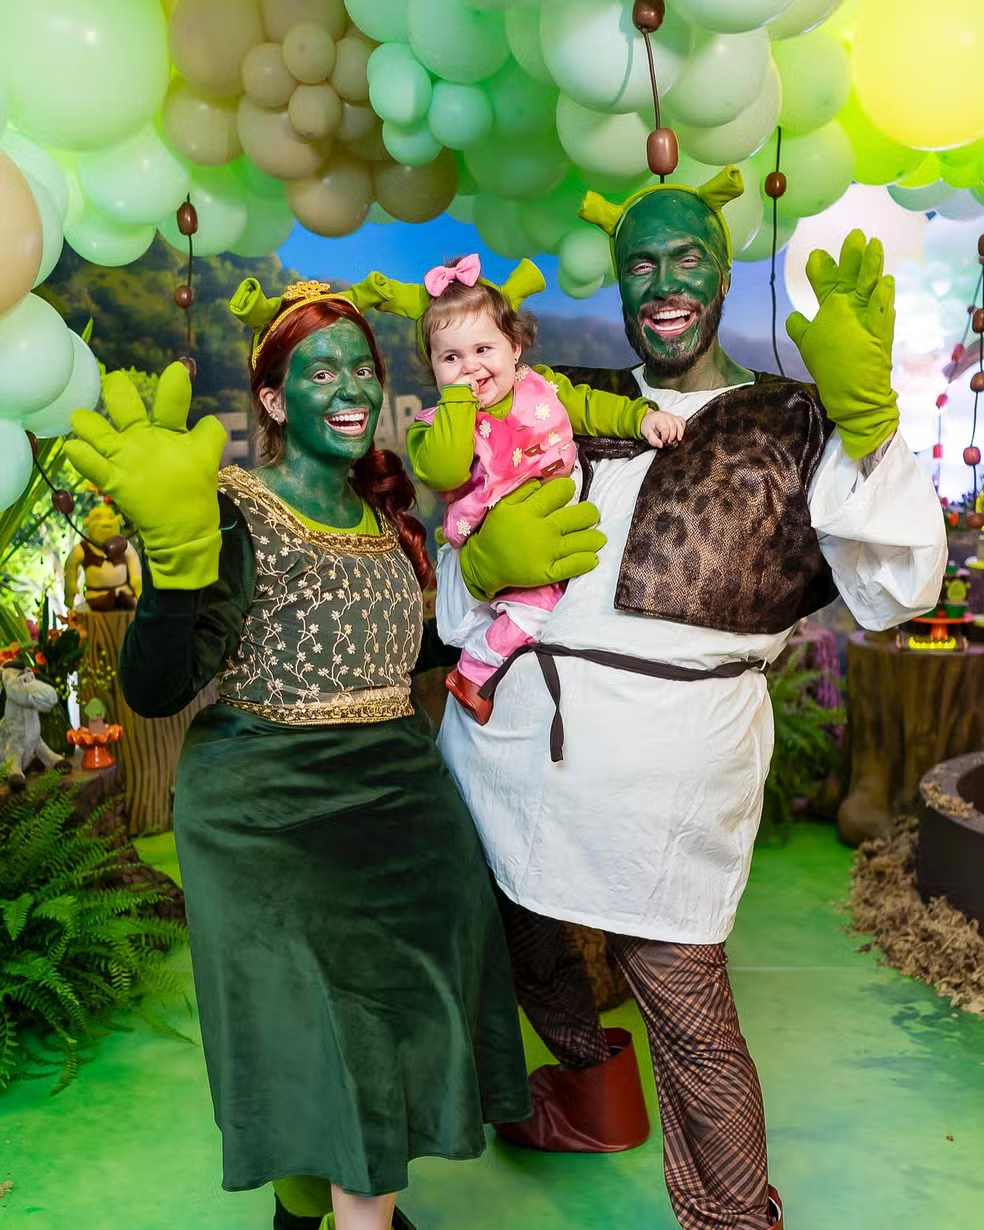 Para comemorar os 11 meses de Lua, o filme "Shrek" foi o tema escolhido para a festa. — Foto: Reprodução/Instagram